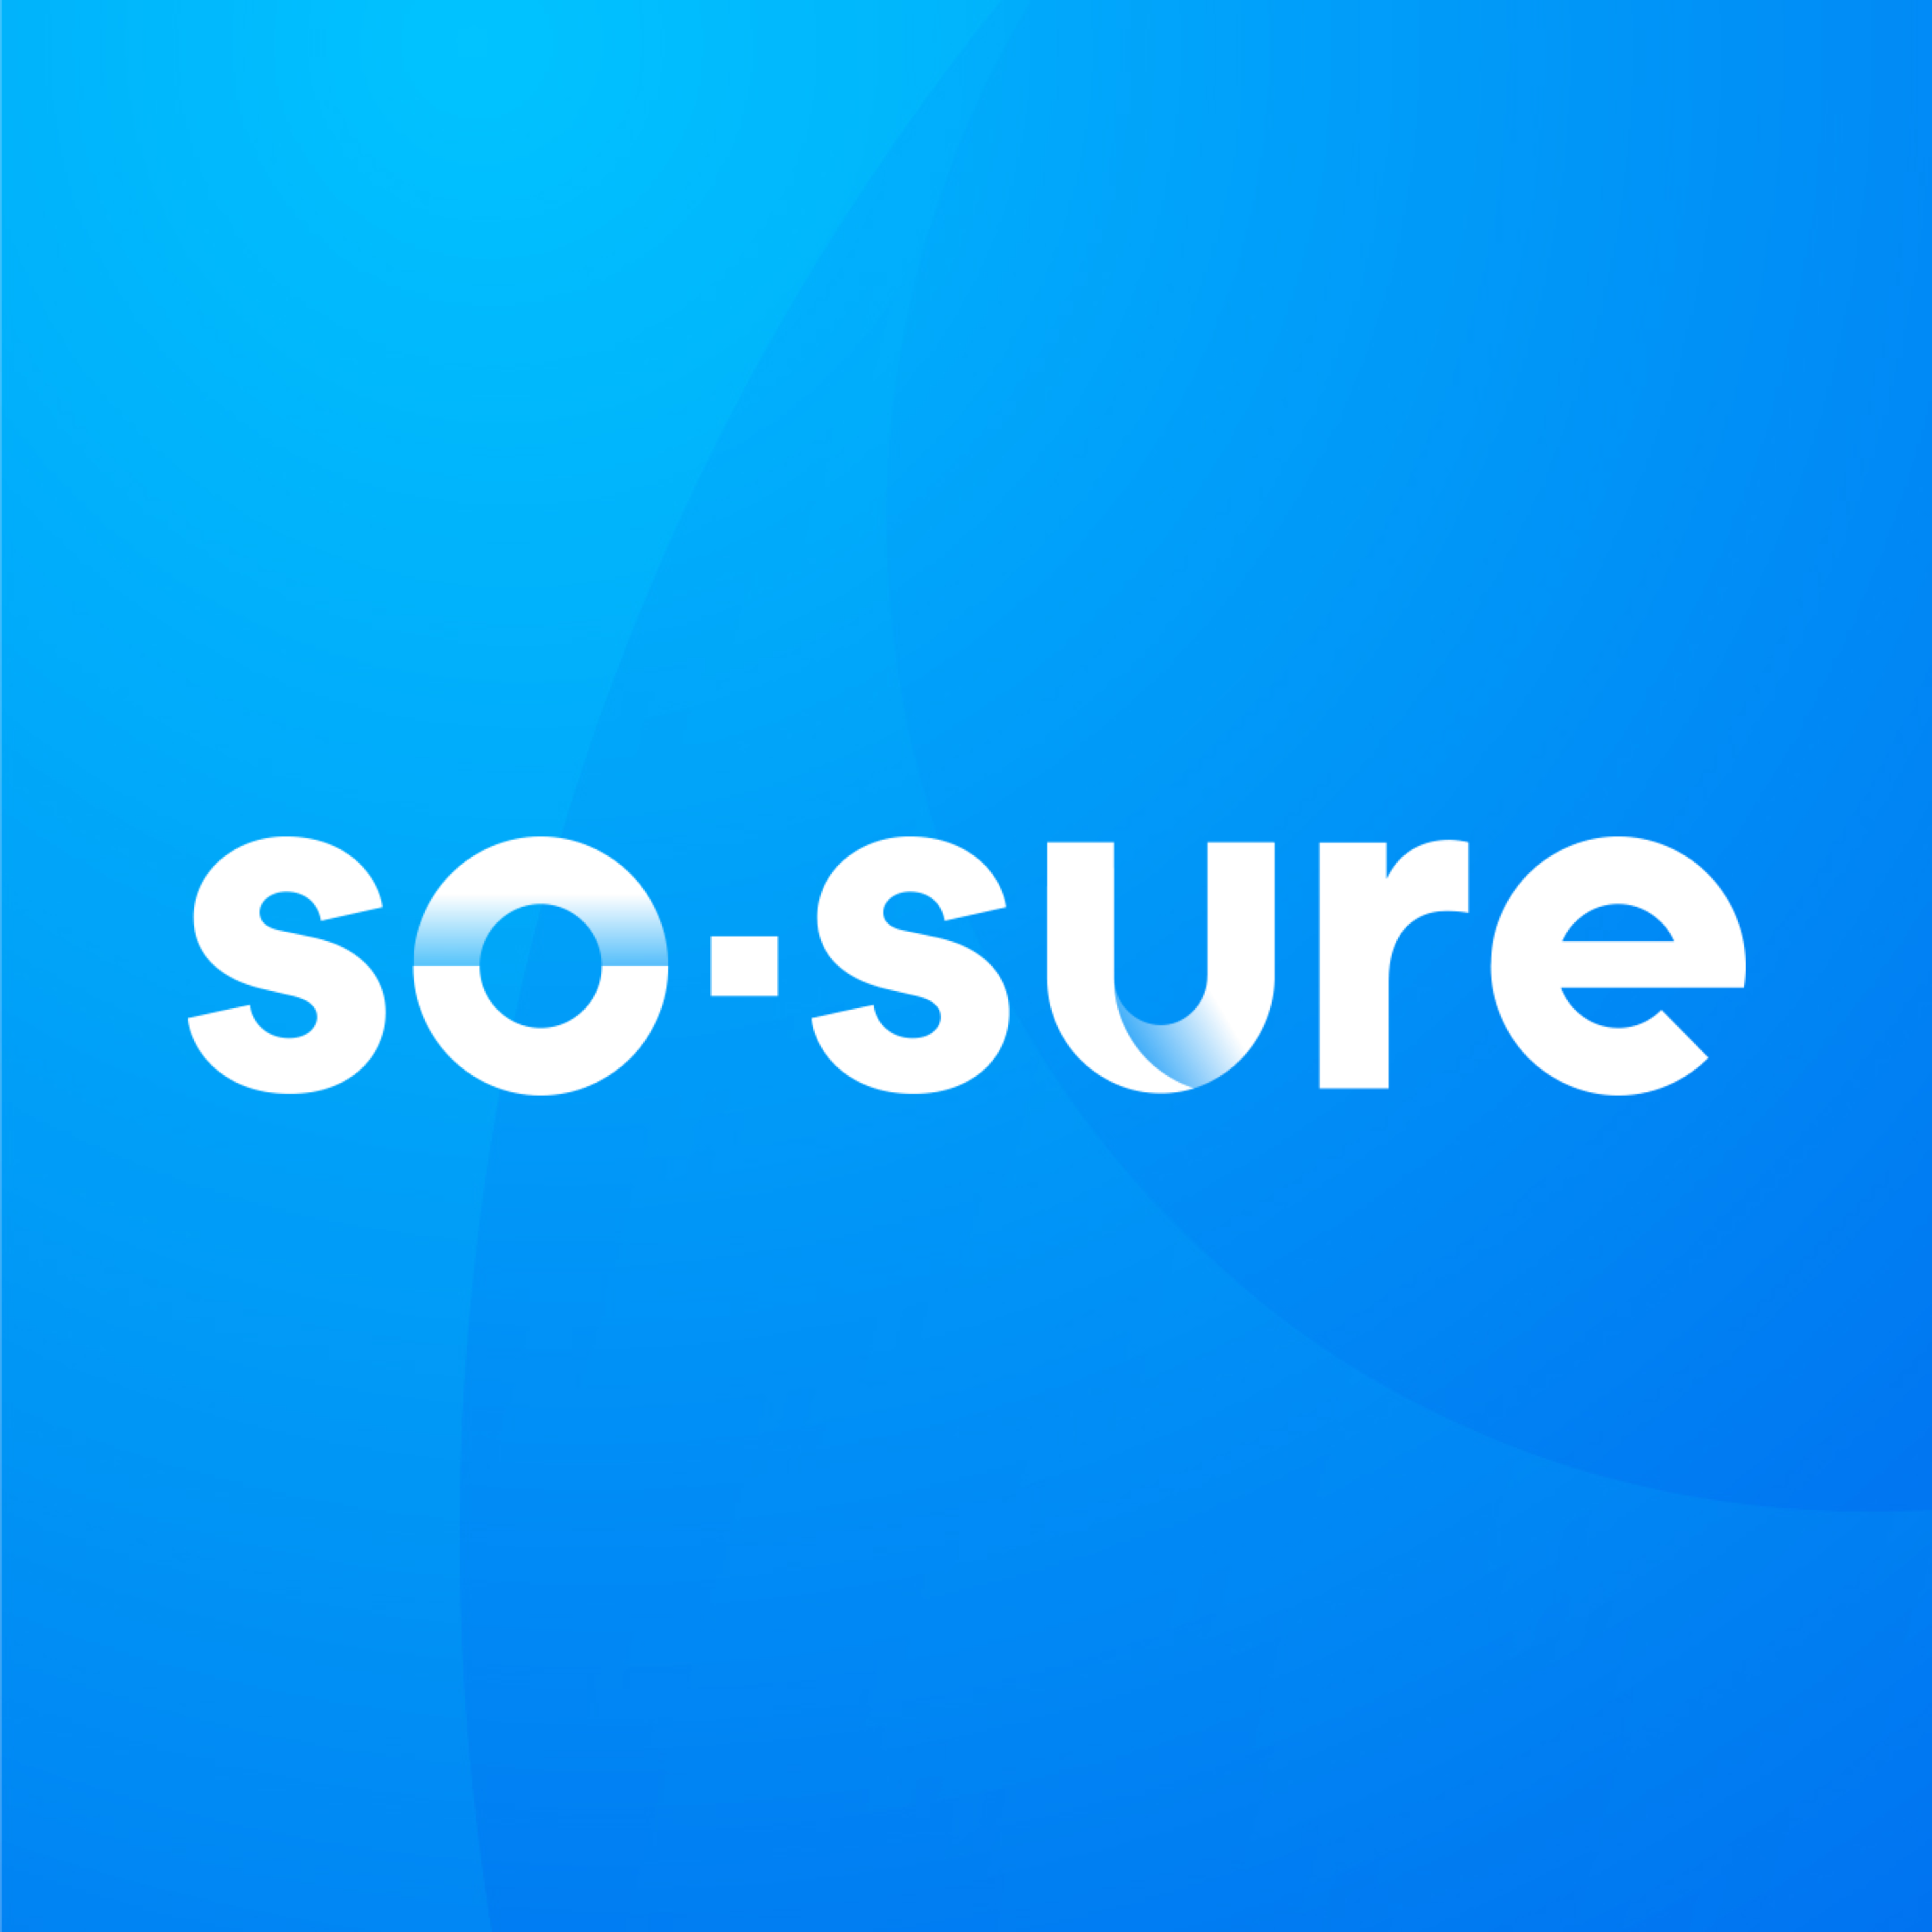 so-sure’s logo